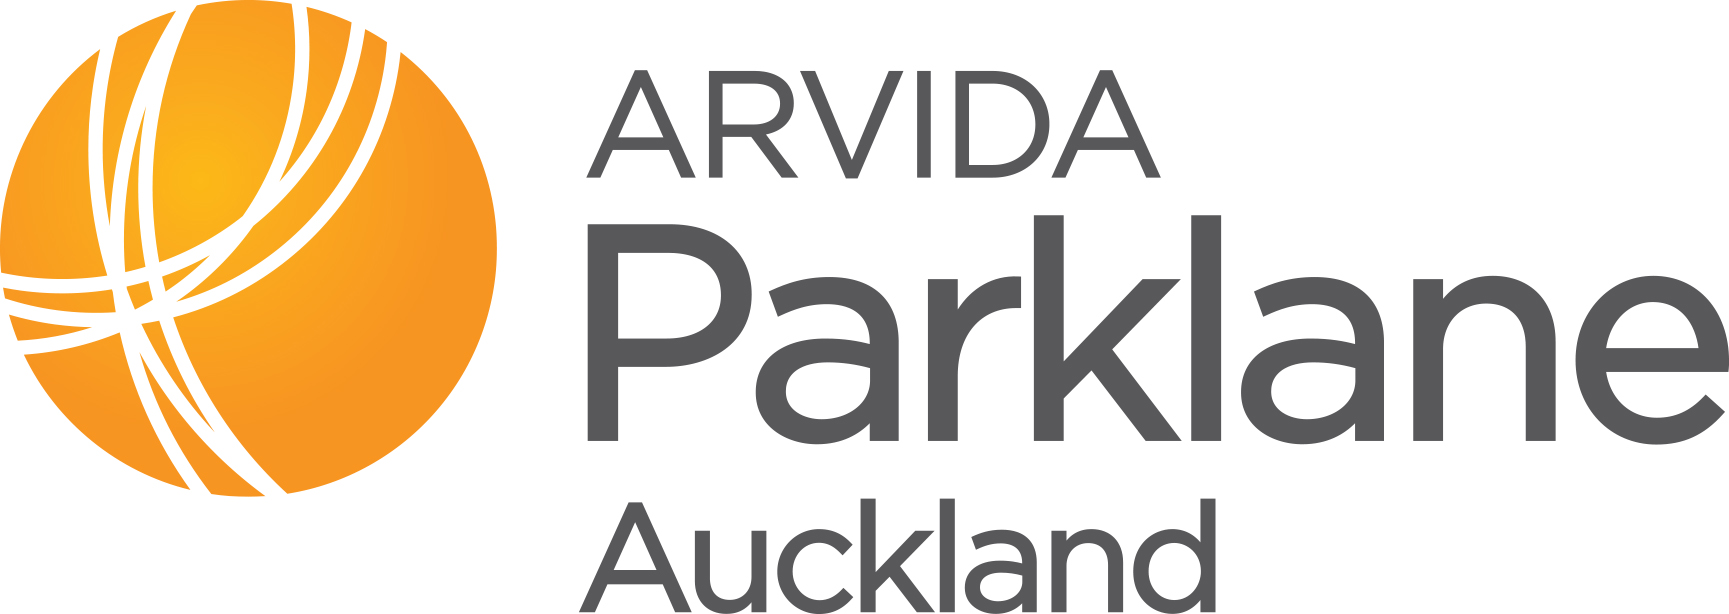 Parklane Auckland | Arvida logo